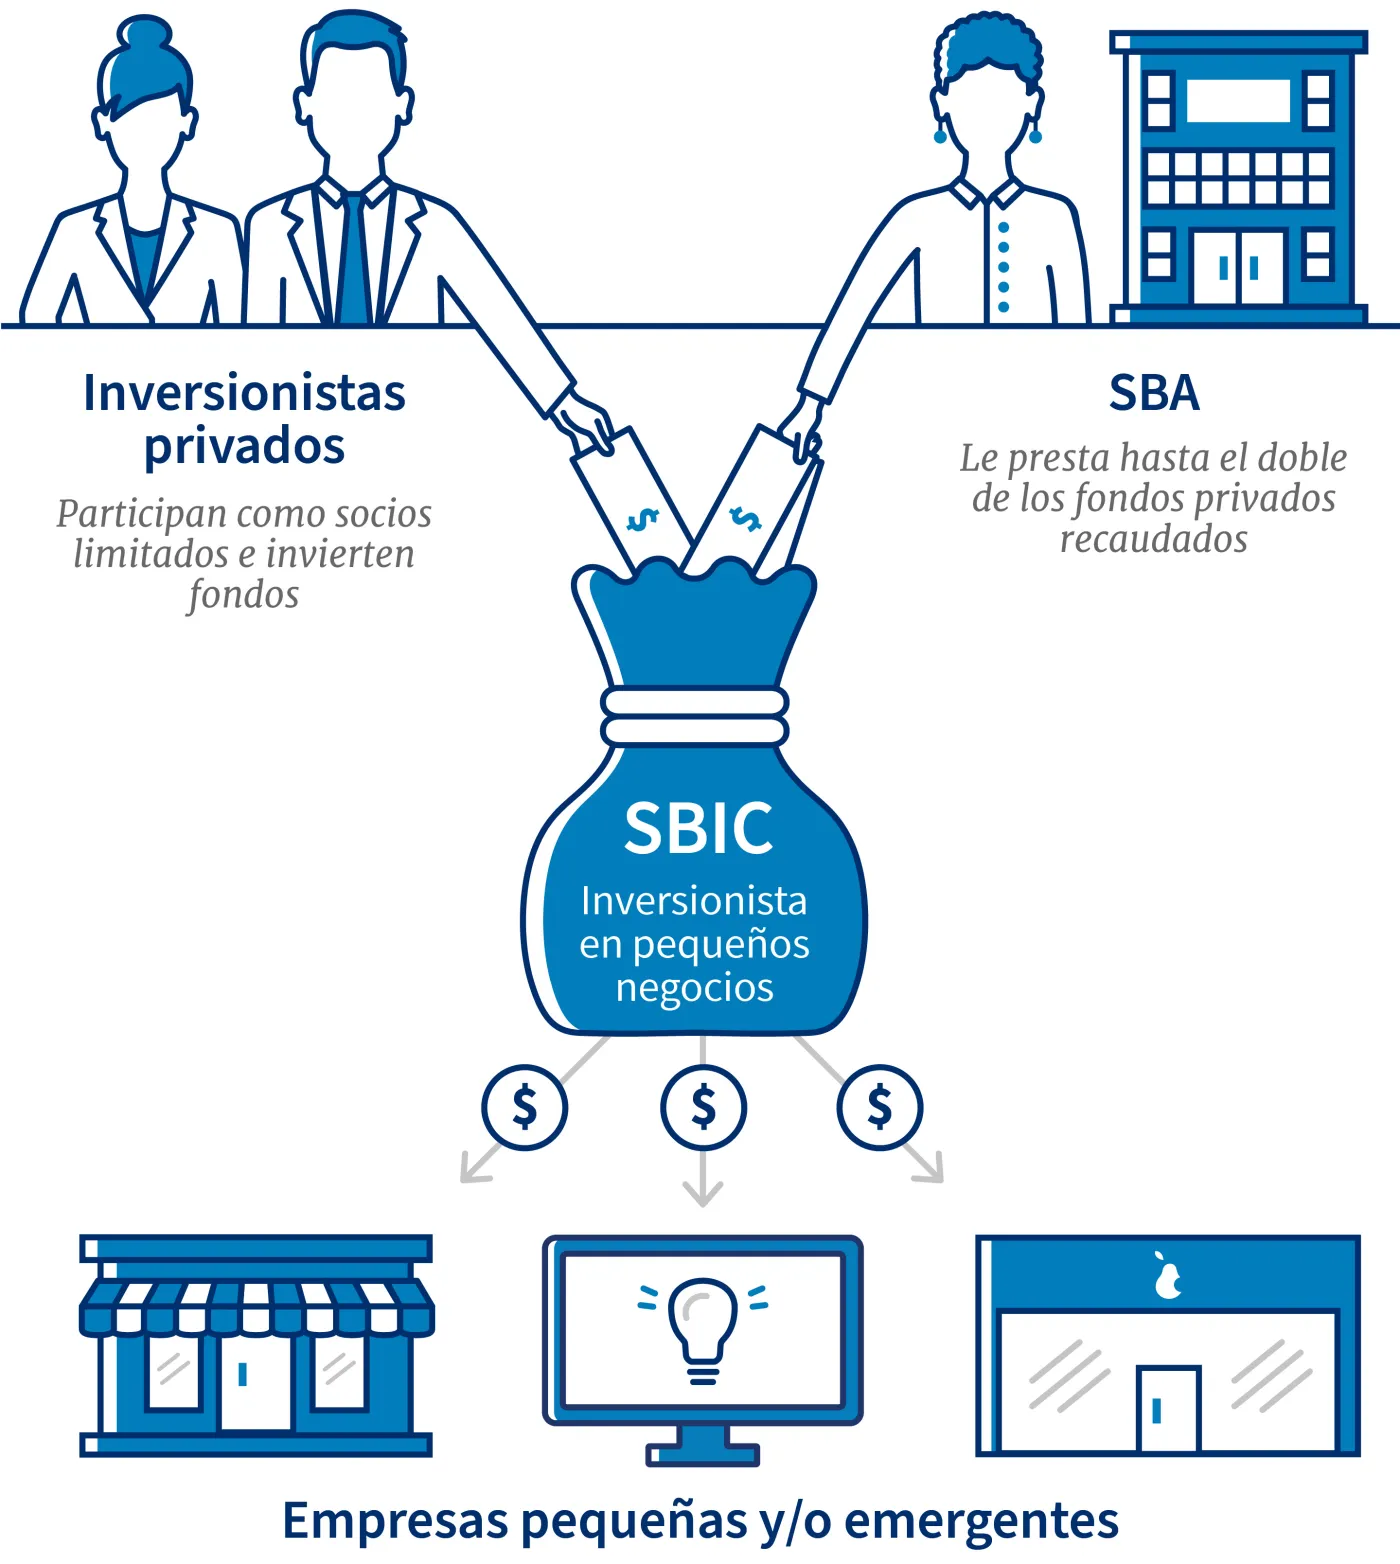 Inversionistas privados pueden participar con fondos limitados, pero la SBA presta hasta el doble de fondos privados recaudados a las pequeñas empresas y empresas emergentes por medio de las inversiones SBIC.